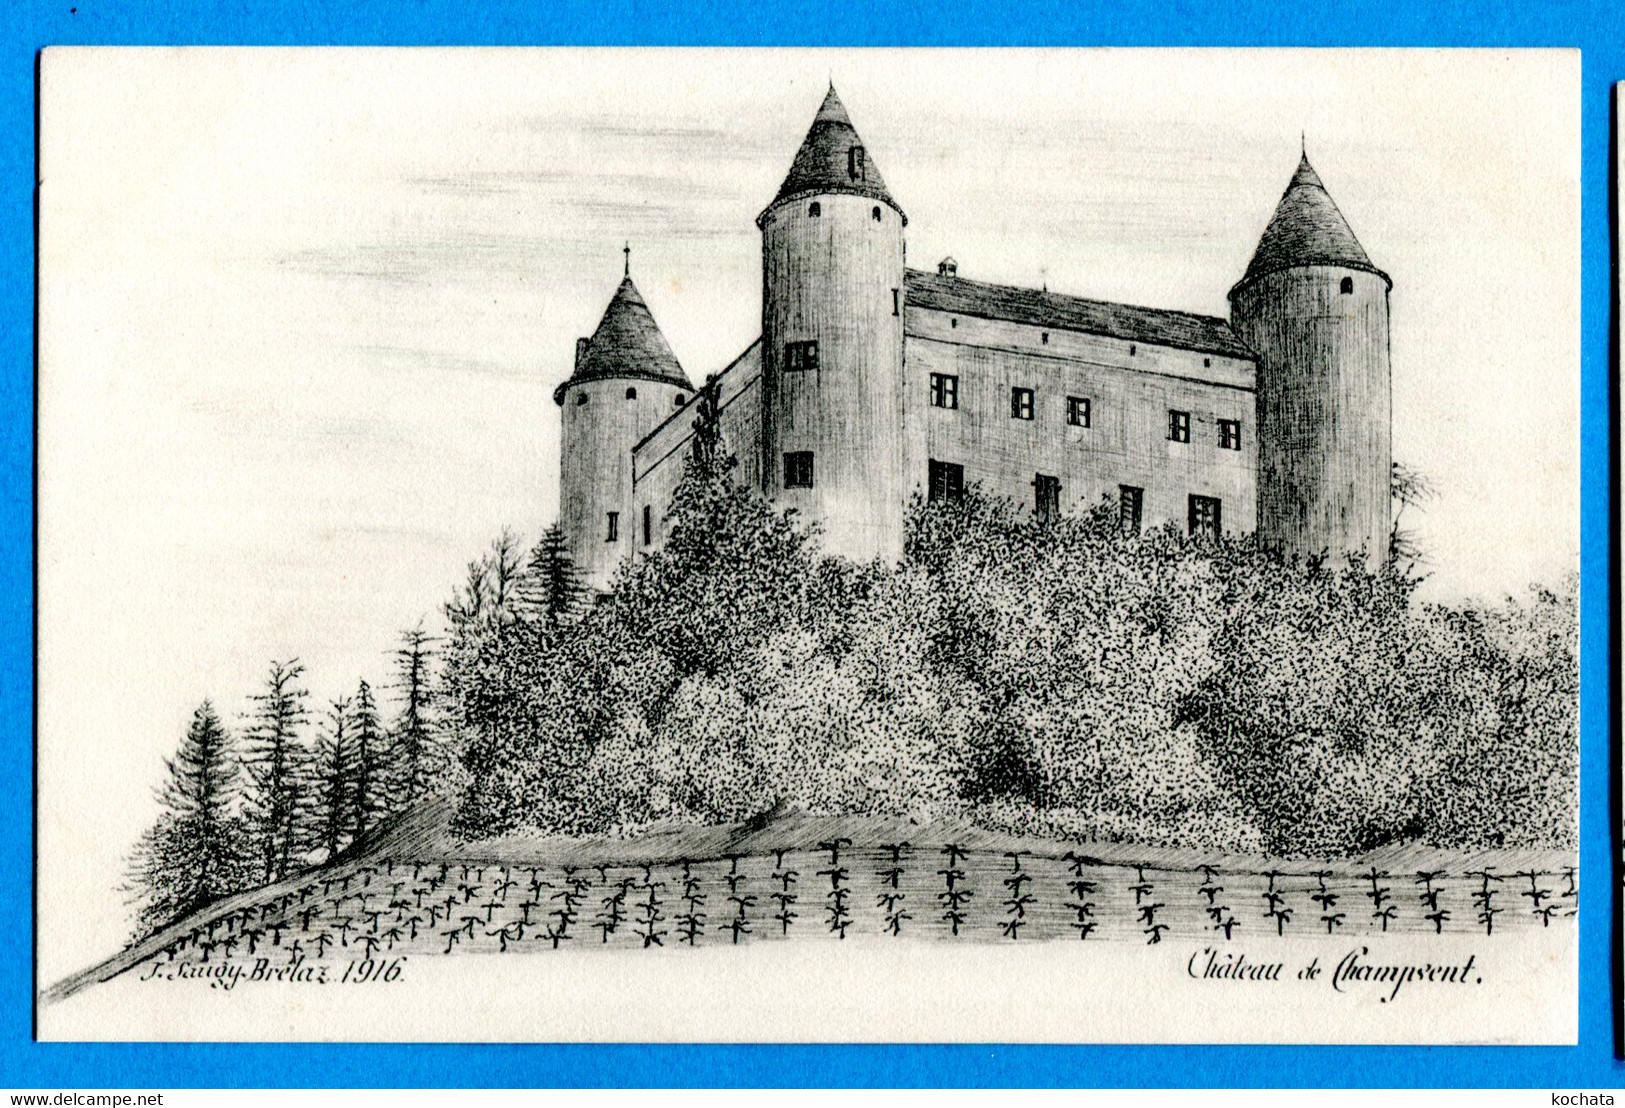 PRO253, Château De Champvent, J. Saugy - Brélaz 1916, édit. H. Baatard, Non Circulée - Champvent 